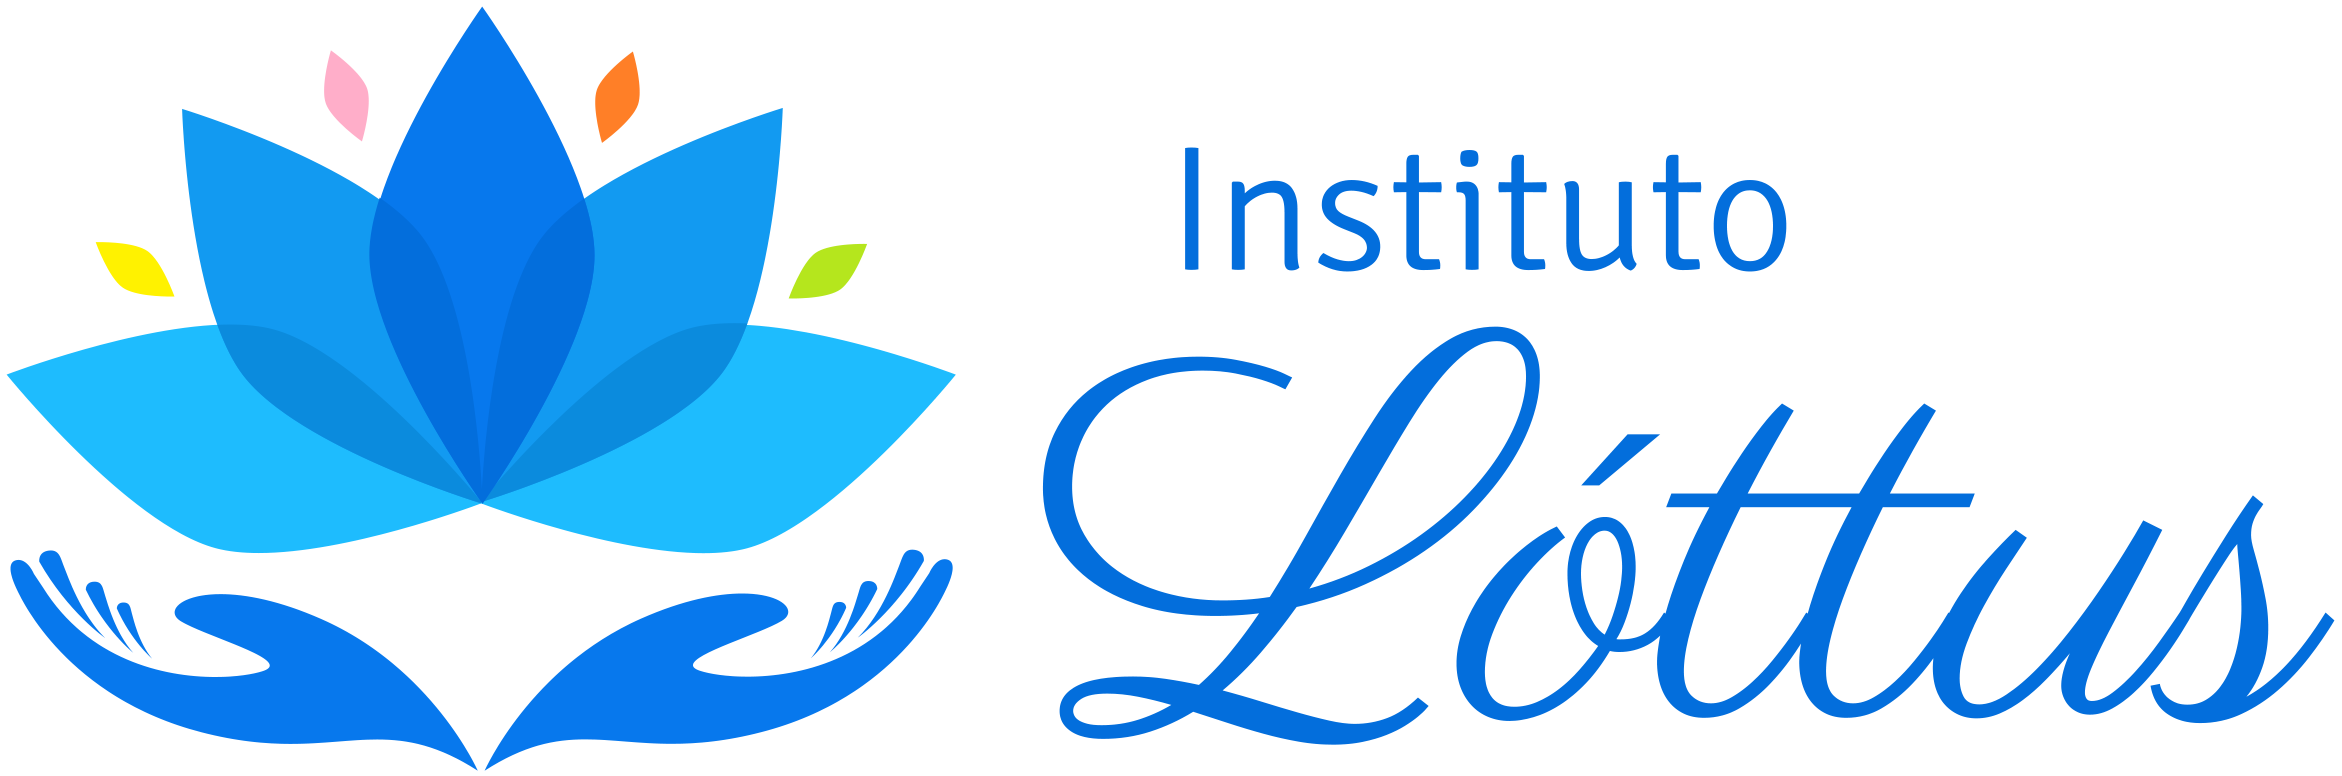 Instituto Lottus